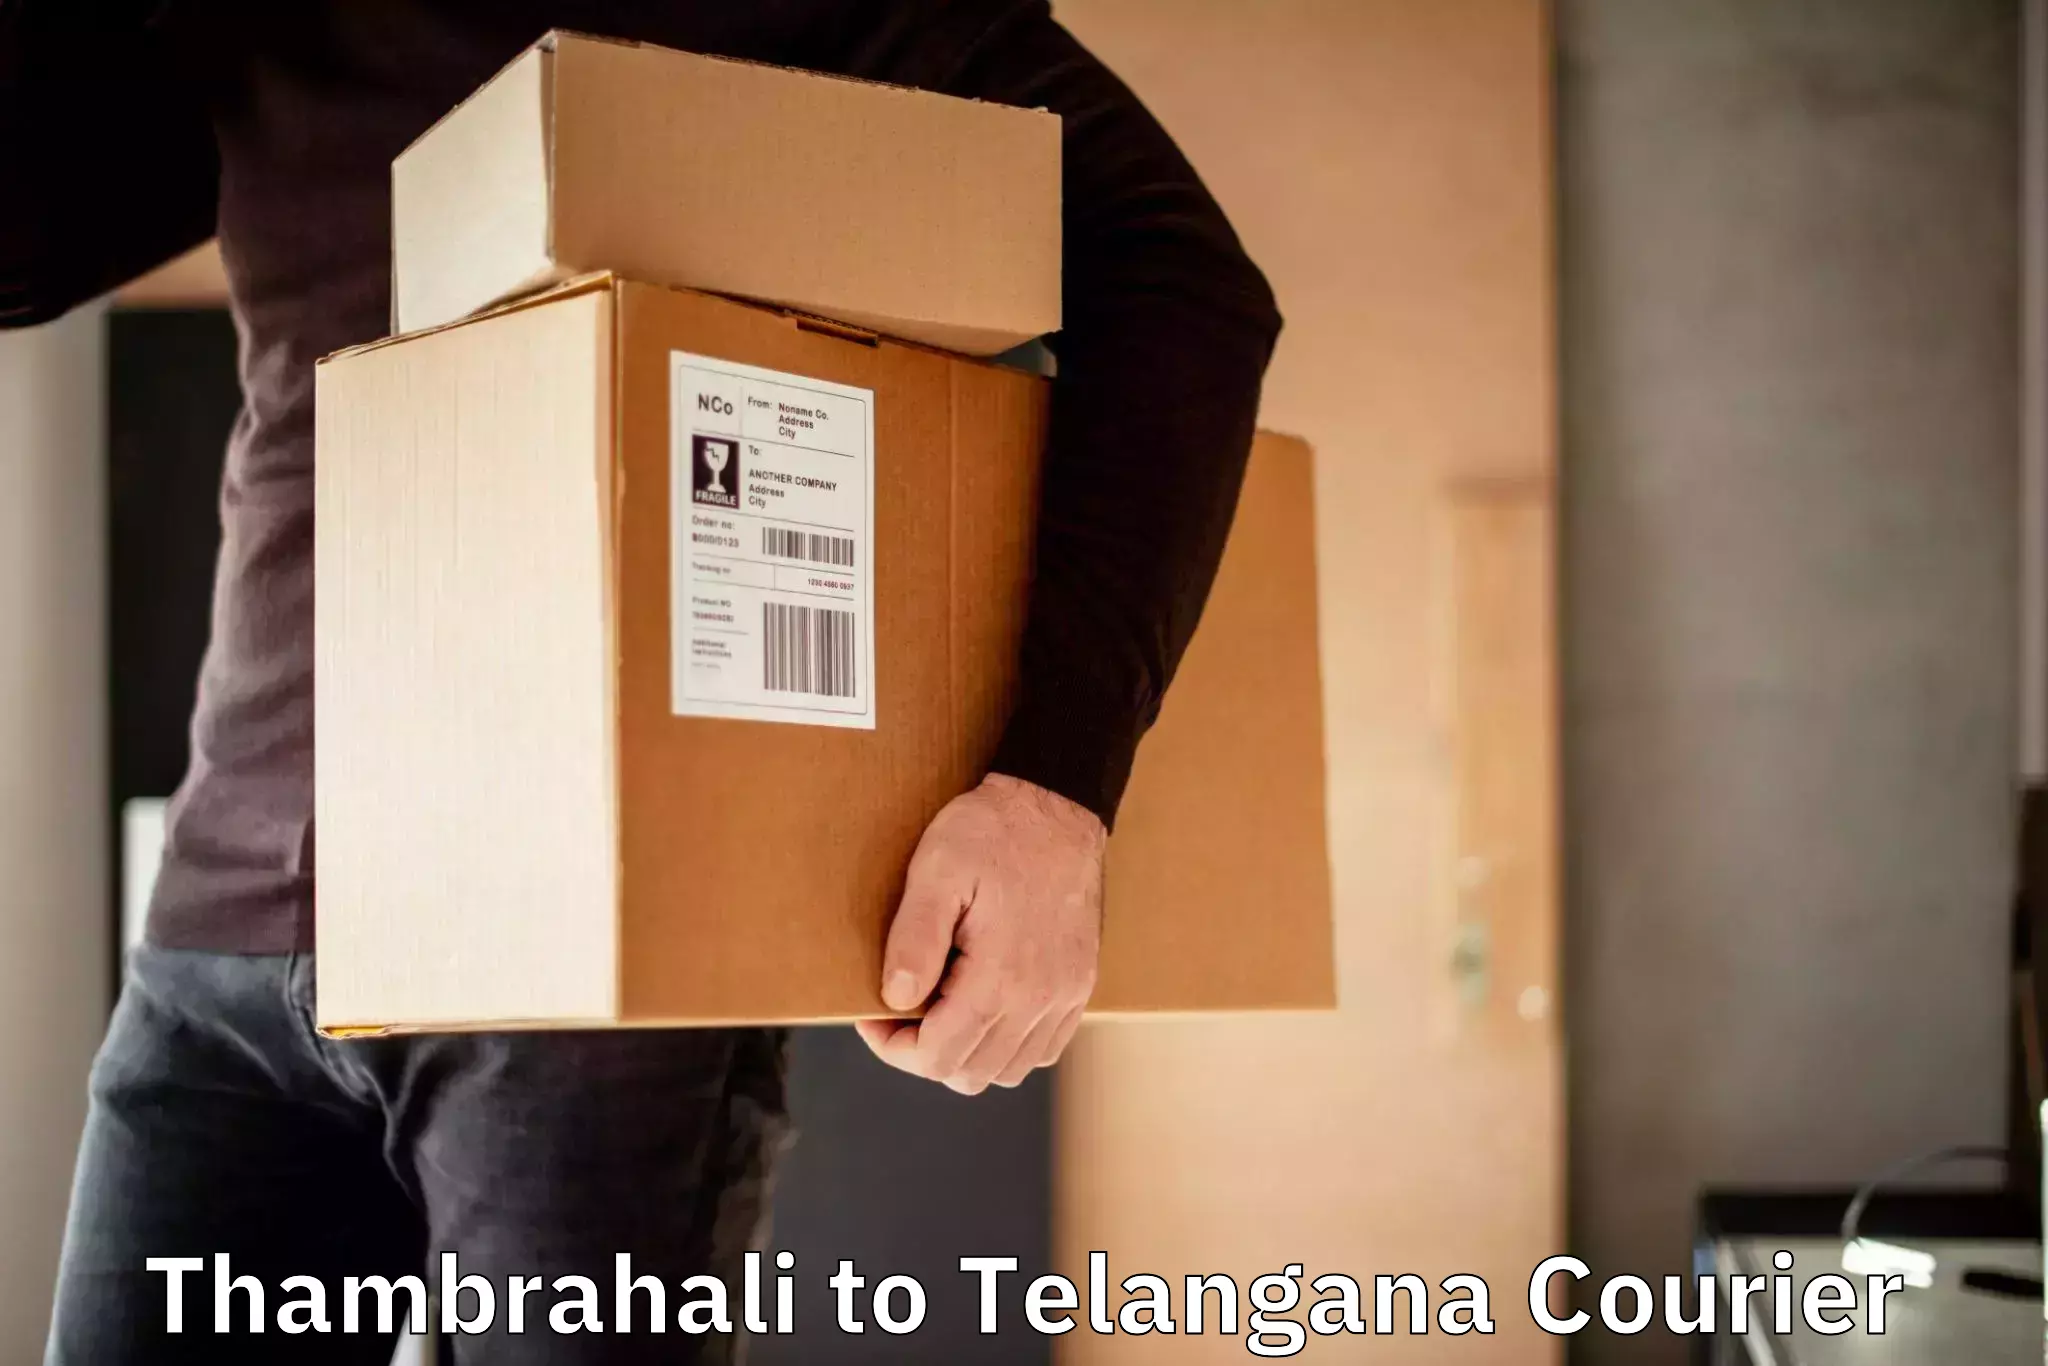 Digital courier platforms Thambrahali to Telangana